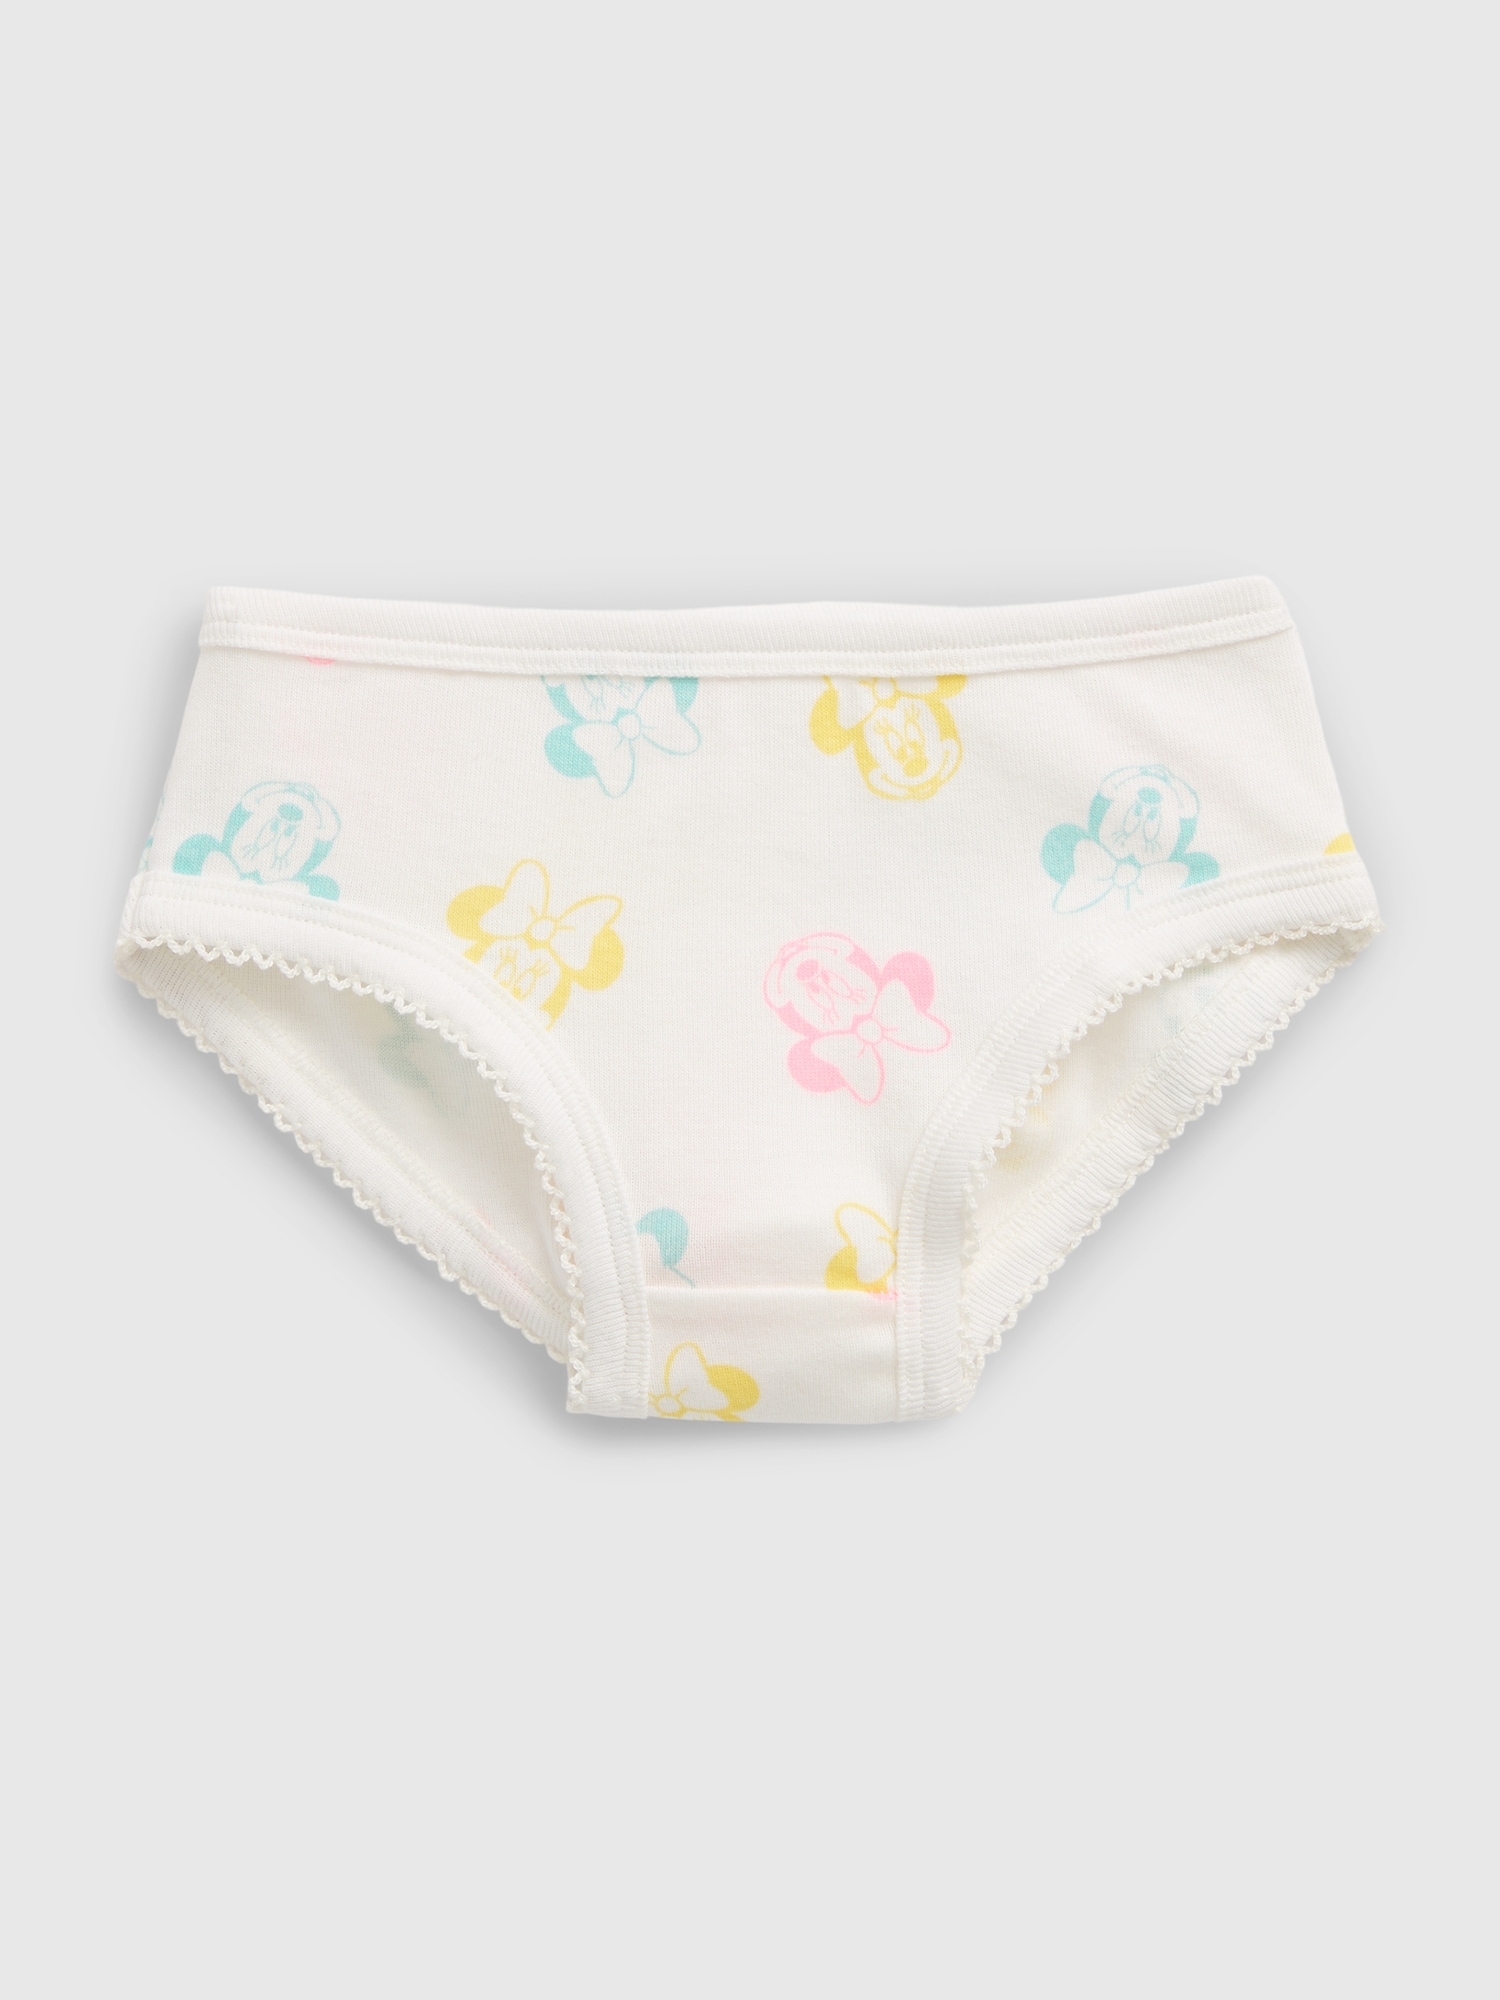 5 Pcs/lot Children Underwear Cotton Baby Girls Panties Minnie